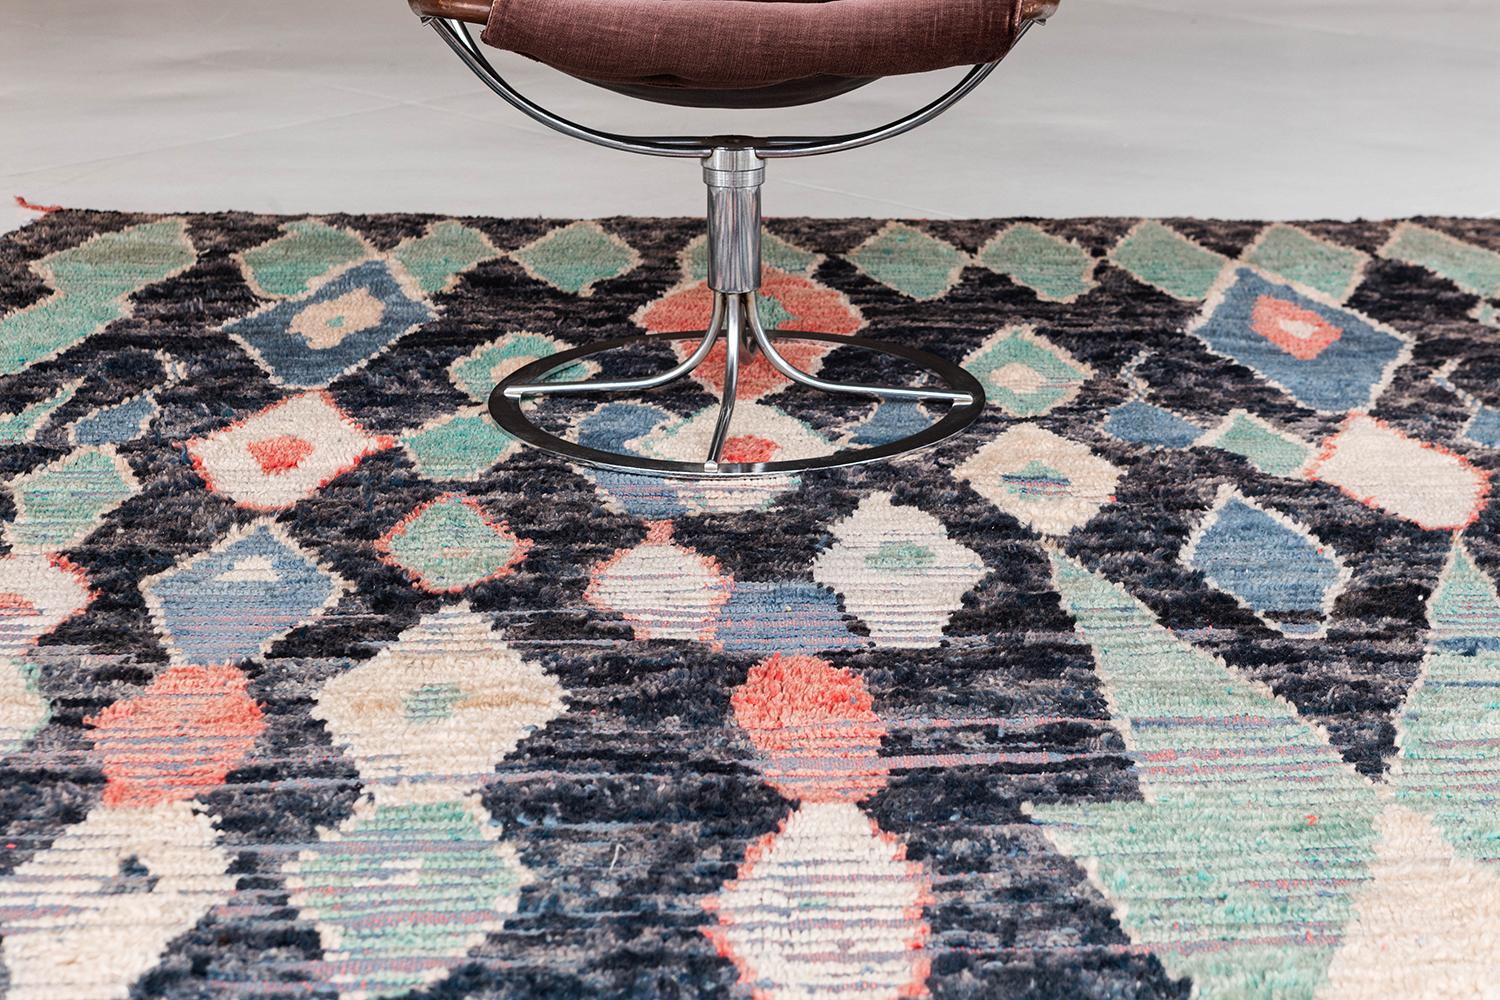 Dieser Vintage-Azilal aus Marokko ist aus wunderschöner, gesättigter Wolle gefertigt und ein einzigartiger Teppich. Das farbenfrohe Florgeflecht besteht aus Stammesrauten, die sich in ein einzigartiges und zeitgenössisches Kunstwerk verwandeln.